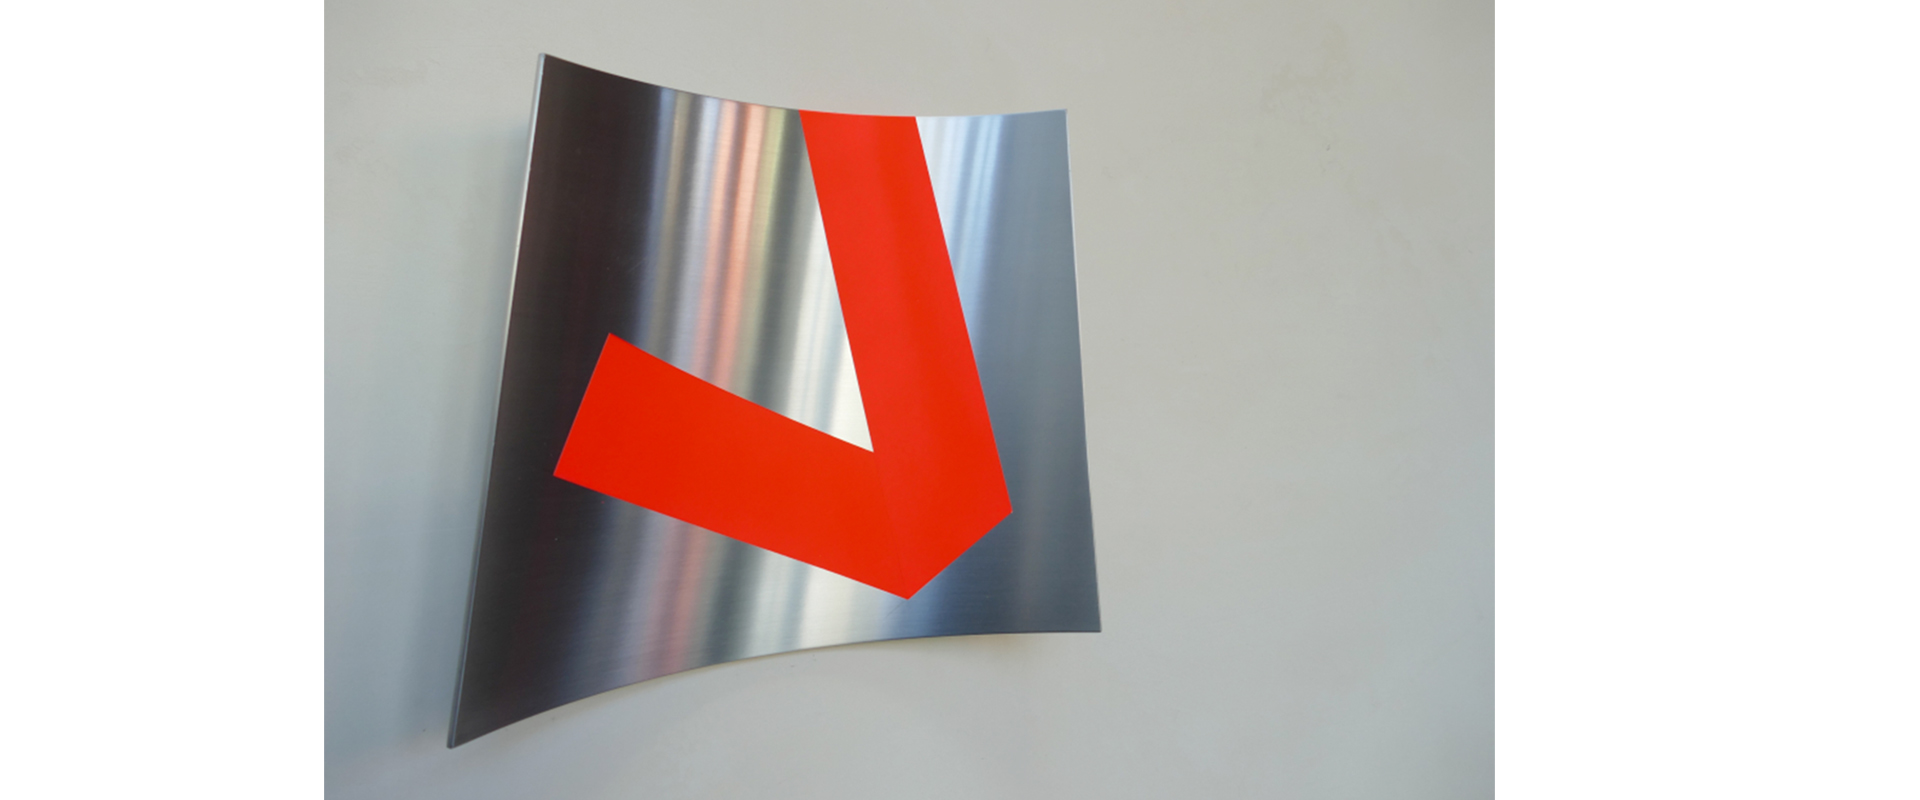 Raumzeichen #493 – 2021, Lack auf Aluminium, 27 x 30 x 7 cm